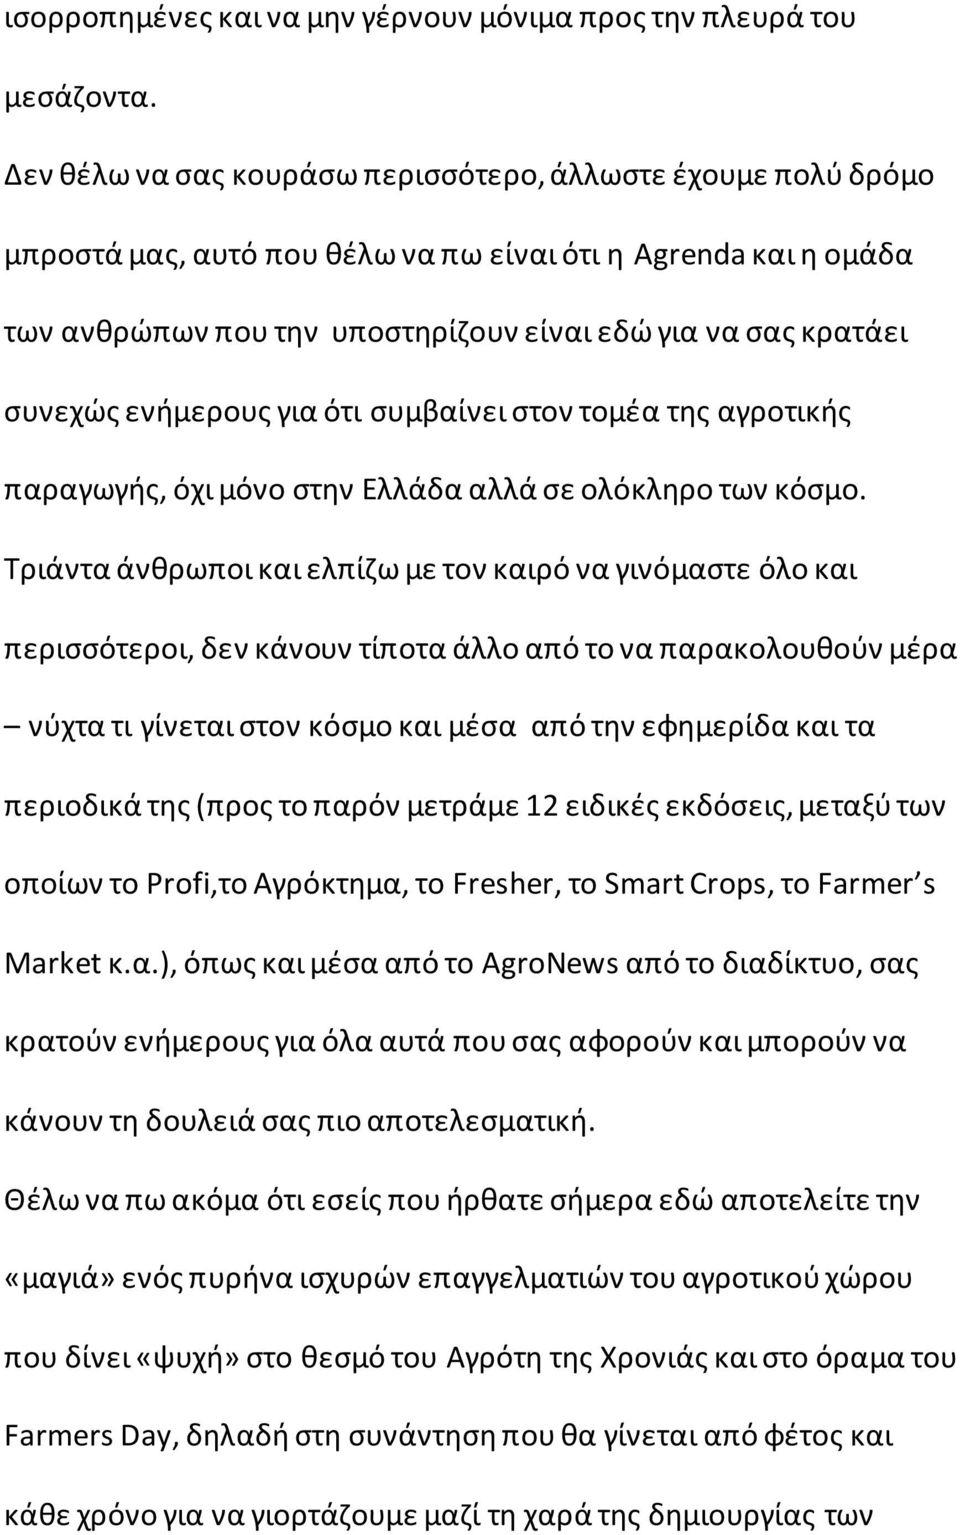 ενήμερους για ότι συμβαίνει στον τομέα της αγροτικής παραγωγής, όχι μόνο στην Ελλάδα αλλά σε ολόκληρο των κόσμο.